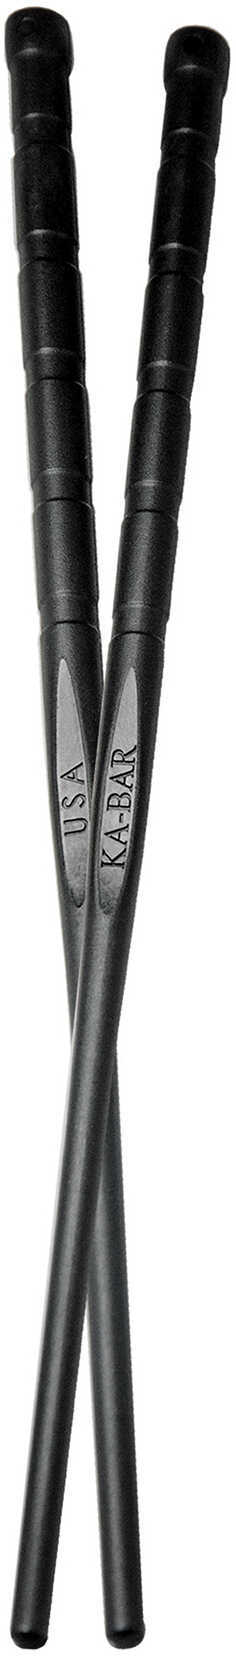 KA-BAR Knives CHOPSTICKS